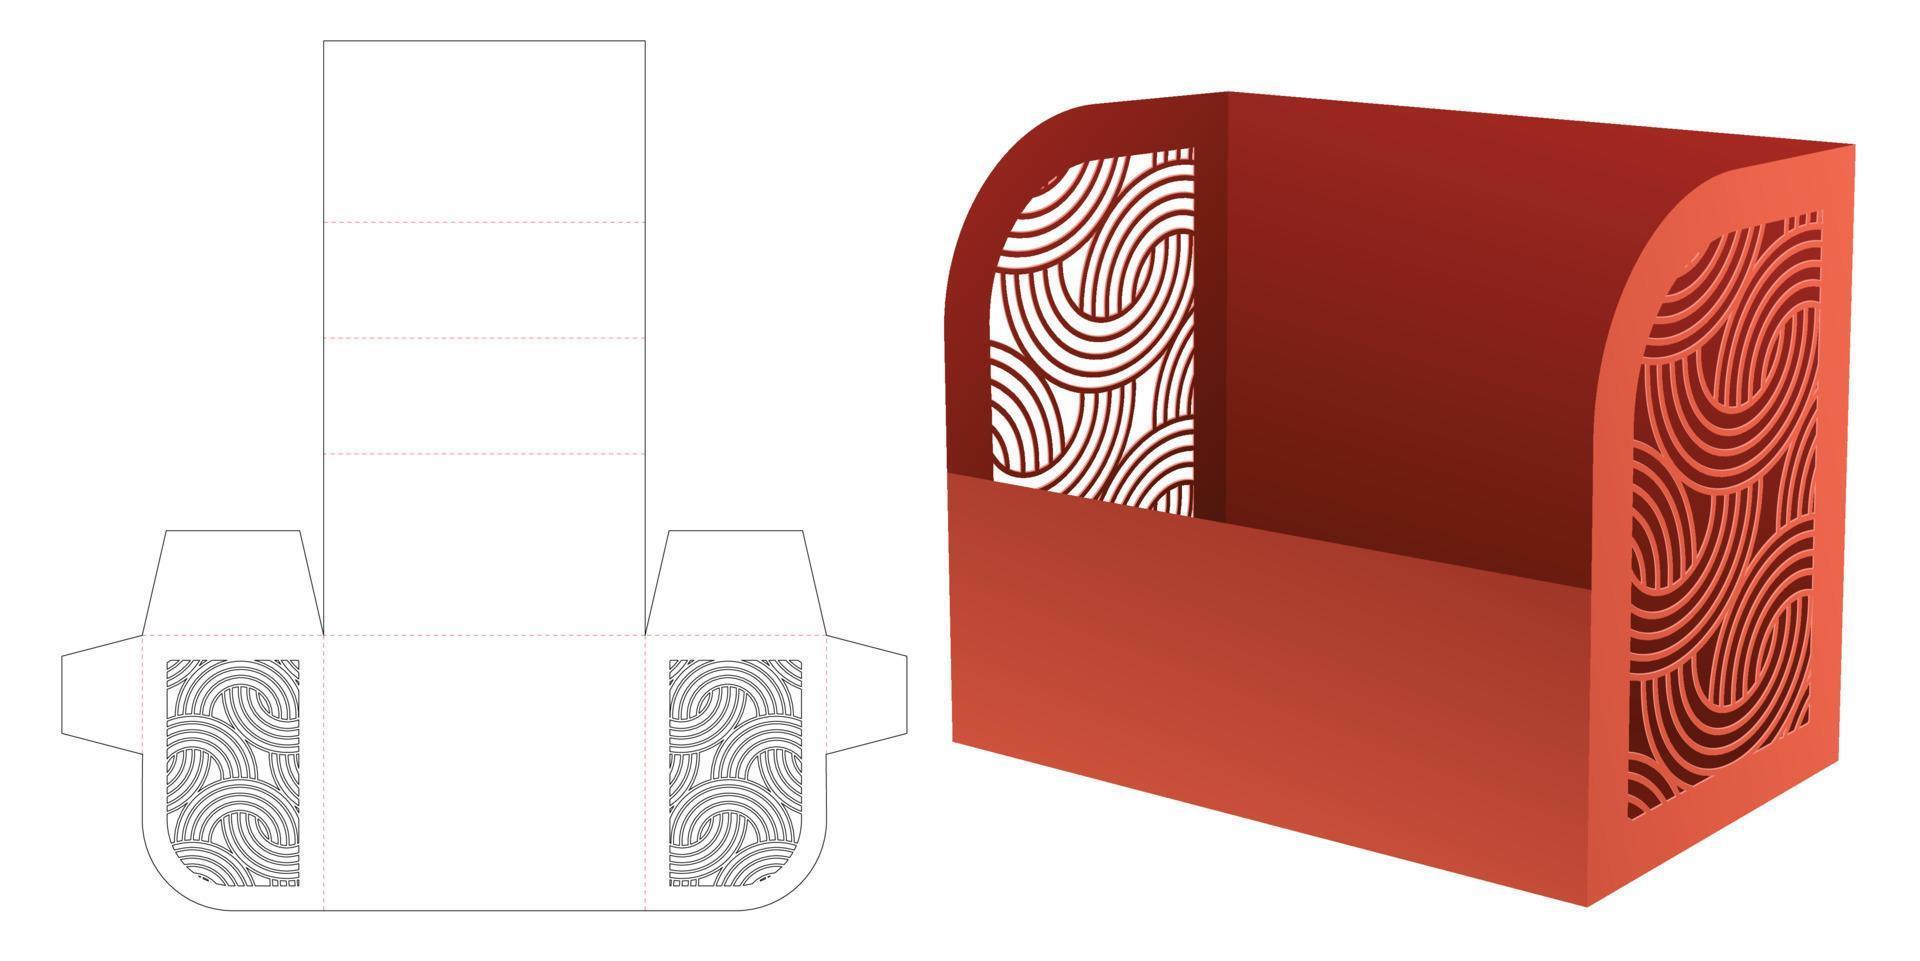 caixa de papelaria de papelão com modelo de corte e vinco de padrão curvo estampado e maquete 3d vetor